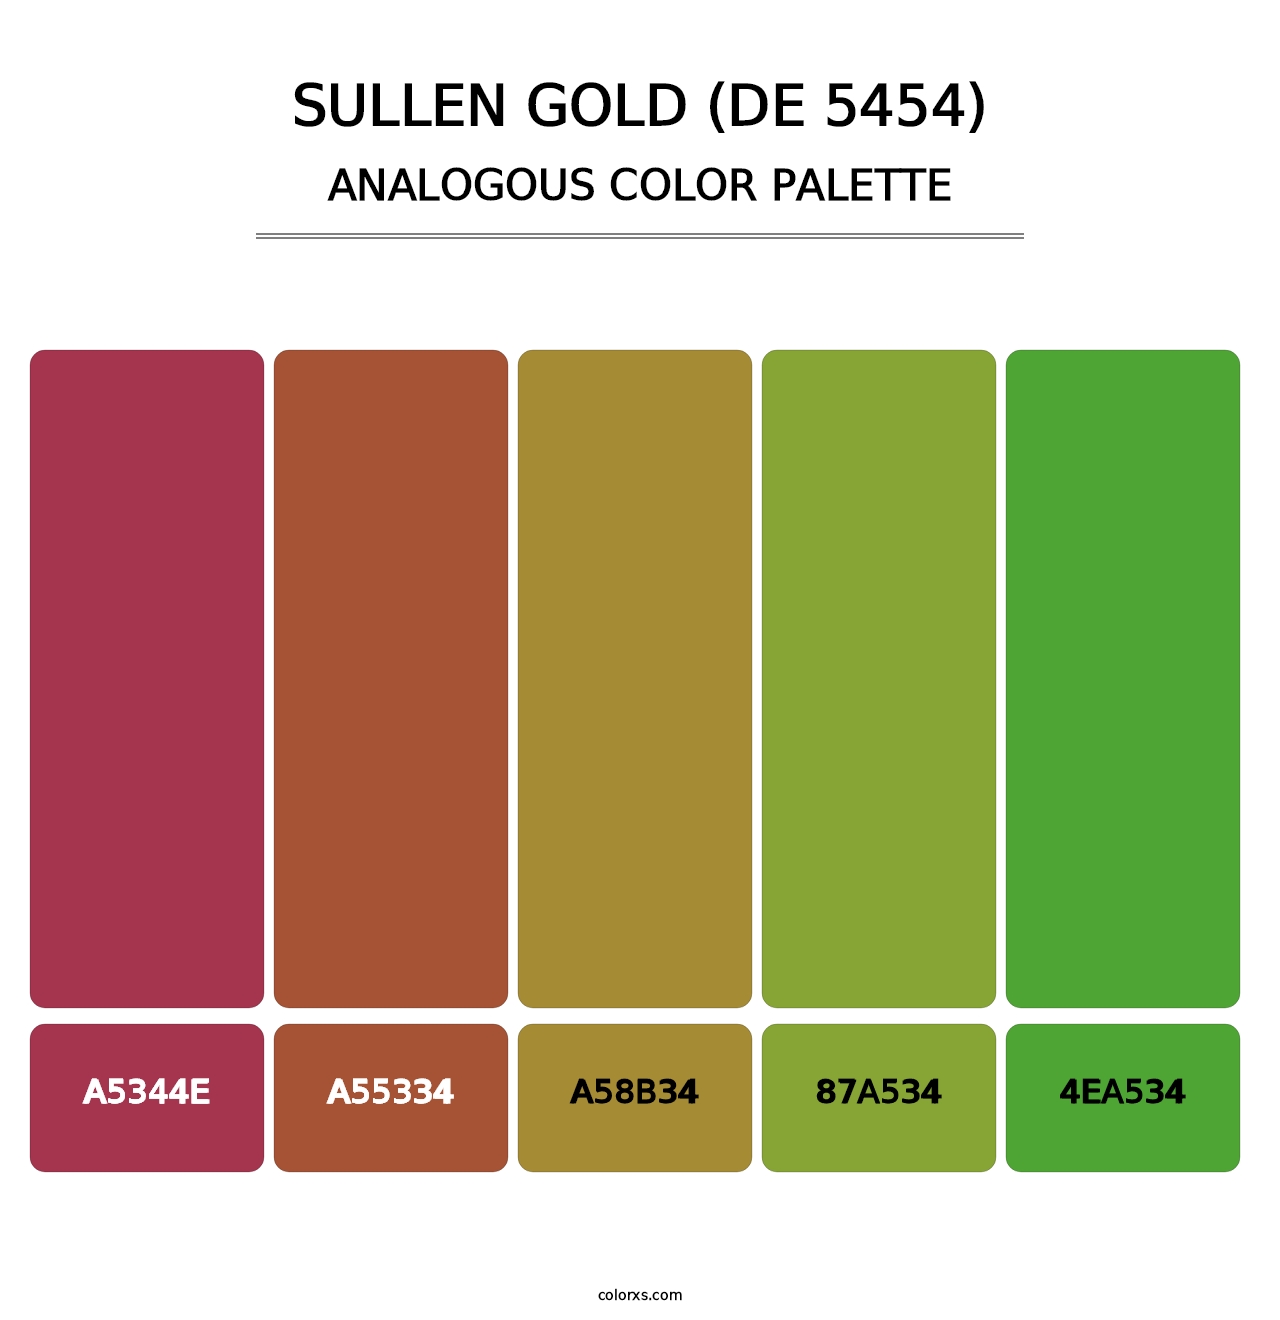 Sullen Gold (DE 5454) - Analogous Color Palette